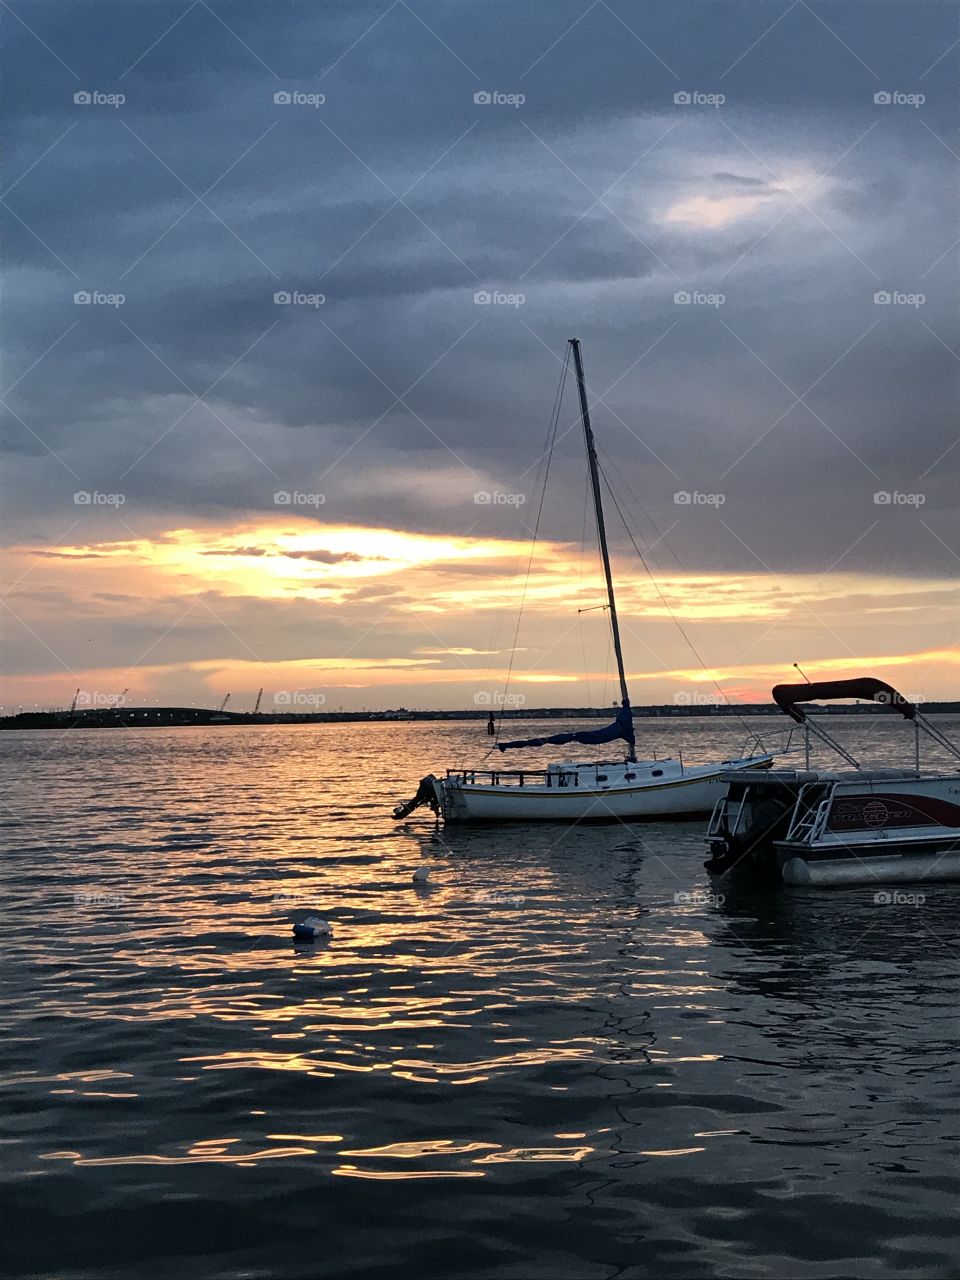 Water, Sea, Ocean, Boat, Sunset